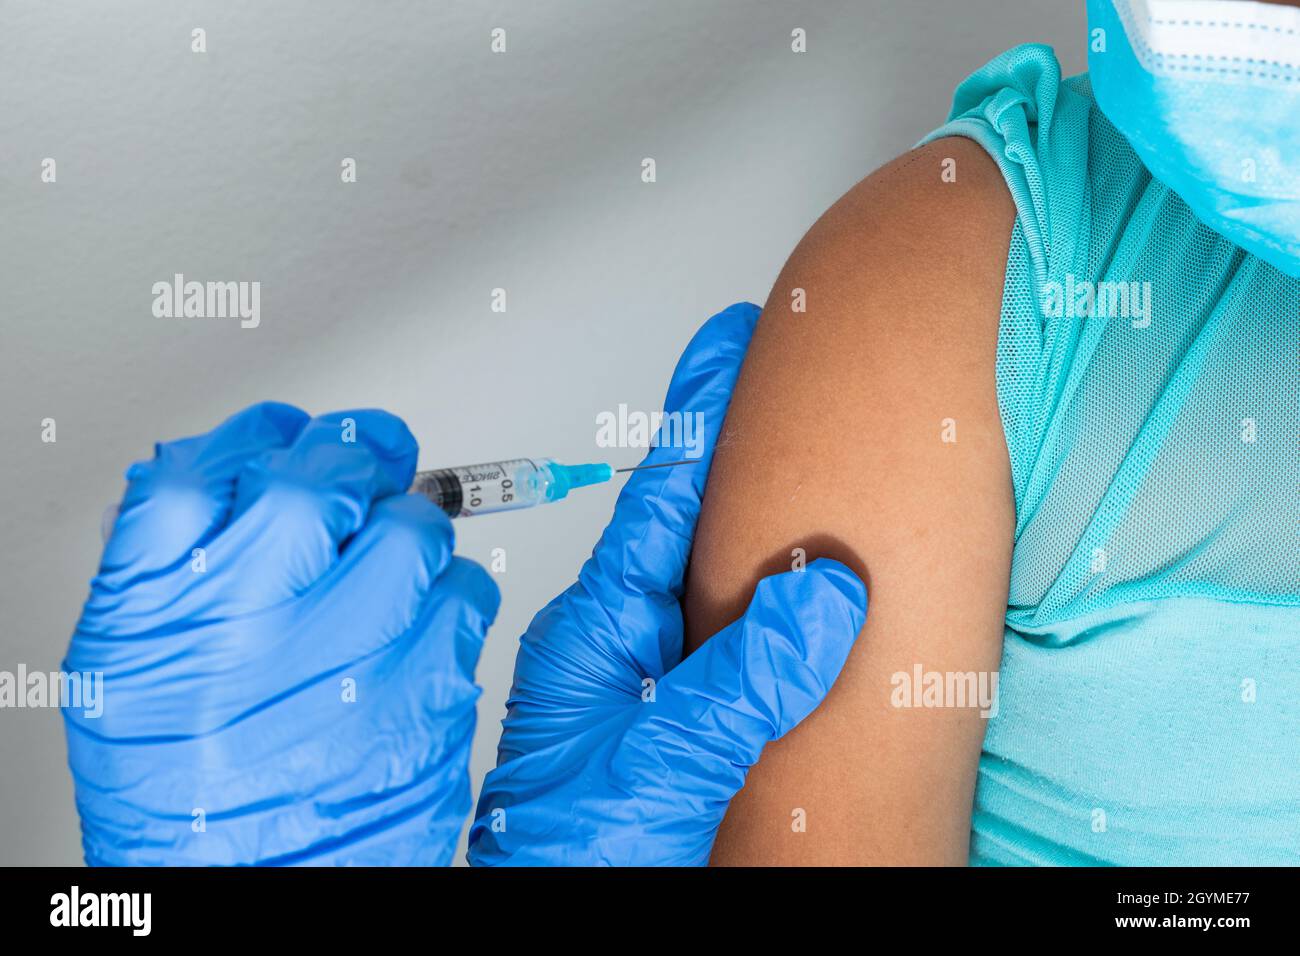 l'infirmière des enfants sur le point d'administrer l'injection dans le bras d'une petite fille brune. médecin injectant le vaccin covid-19. vaccin contre la grippe Banque D'Images